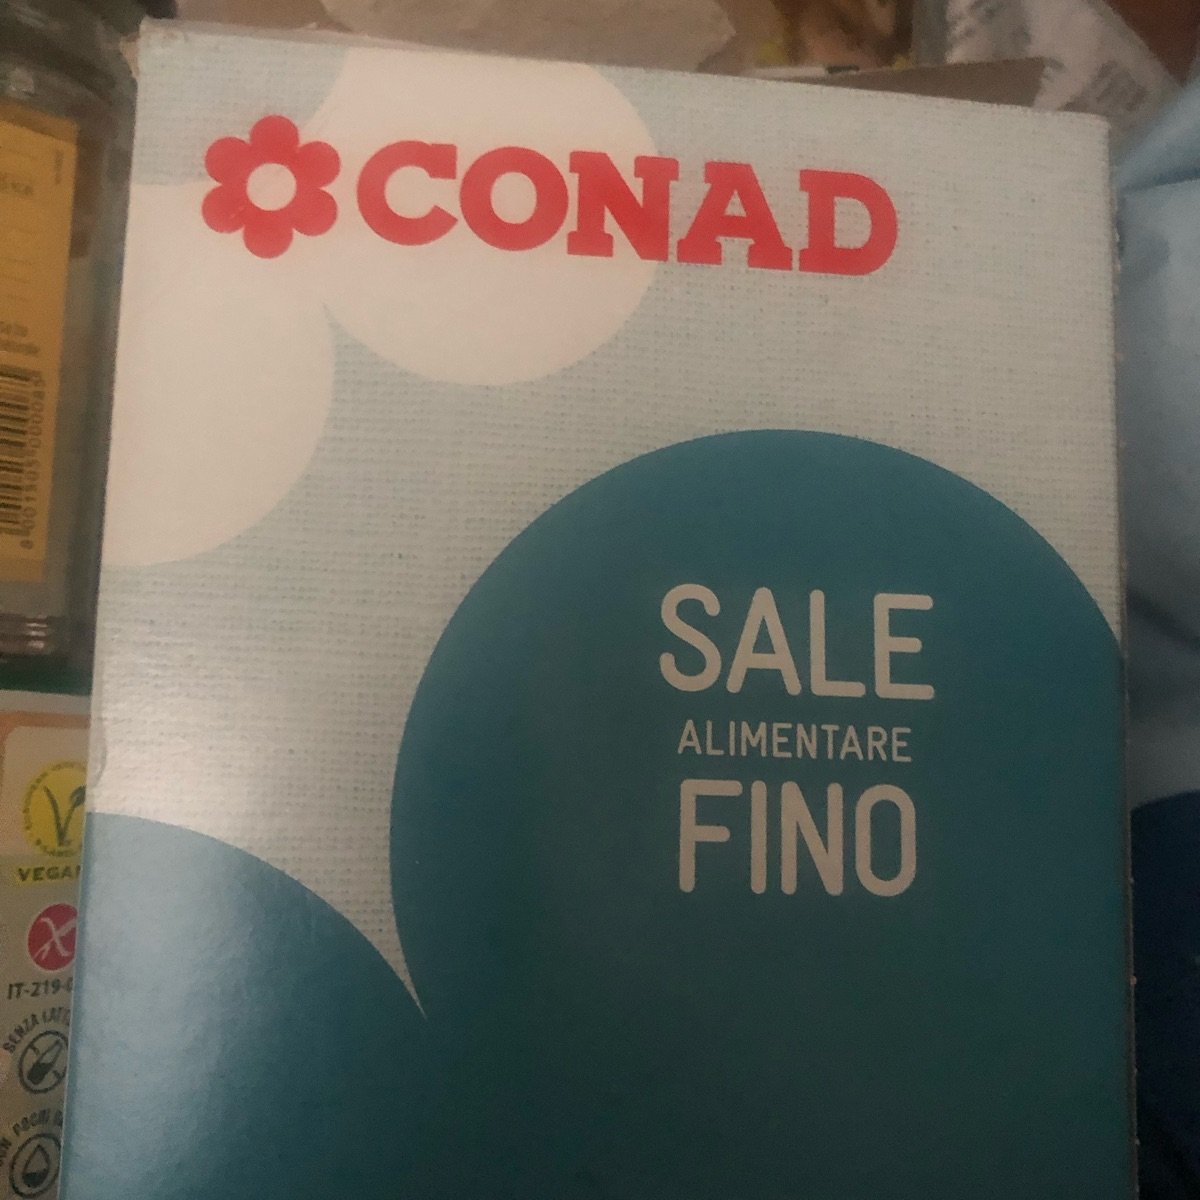 Conad Sale alimentare fino Reviews